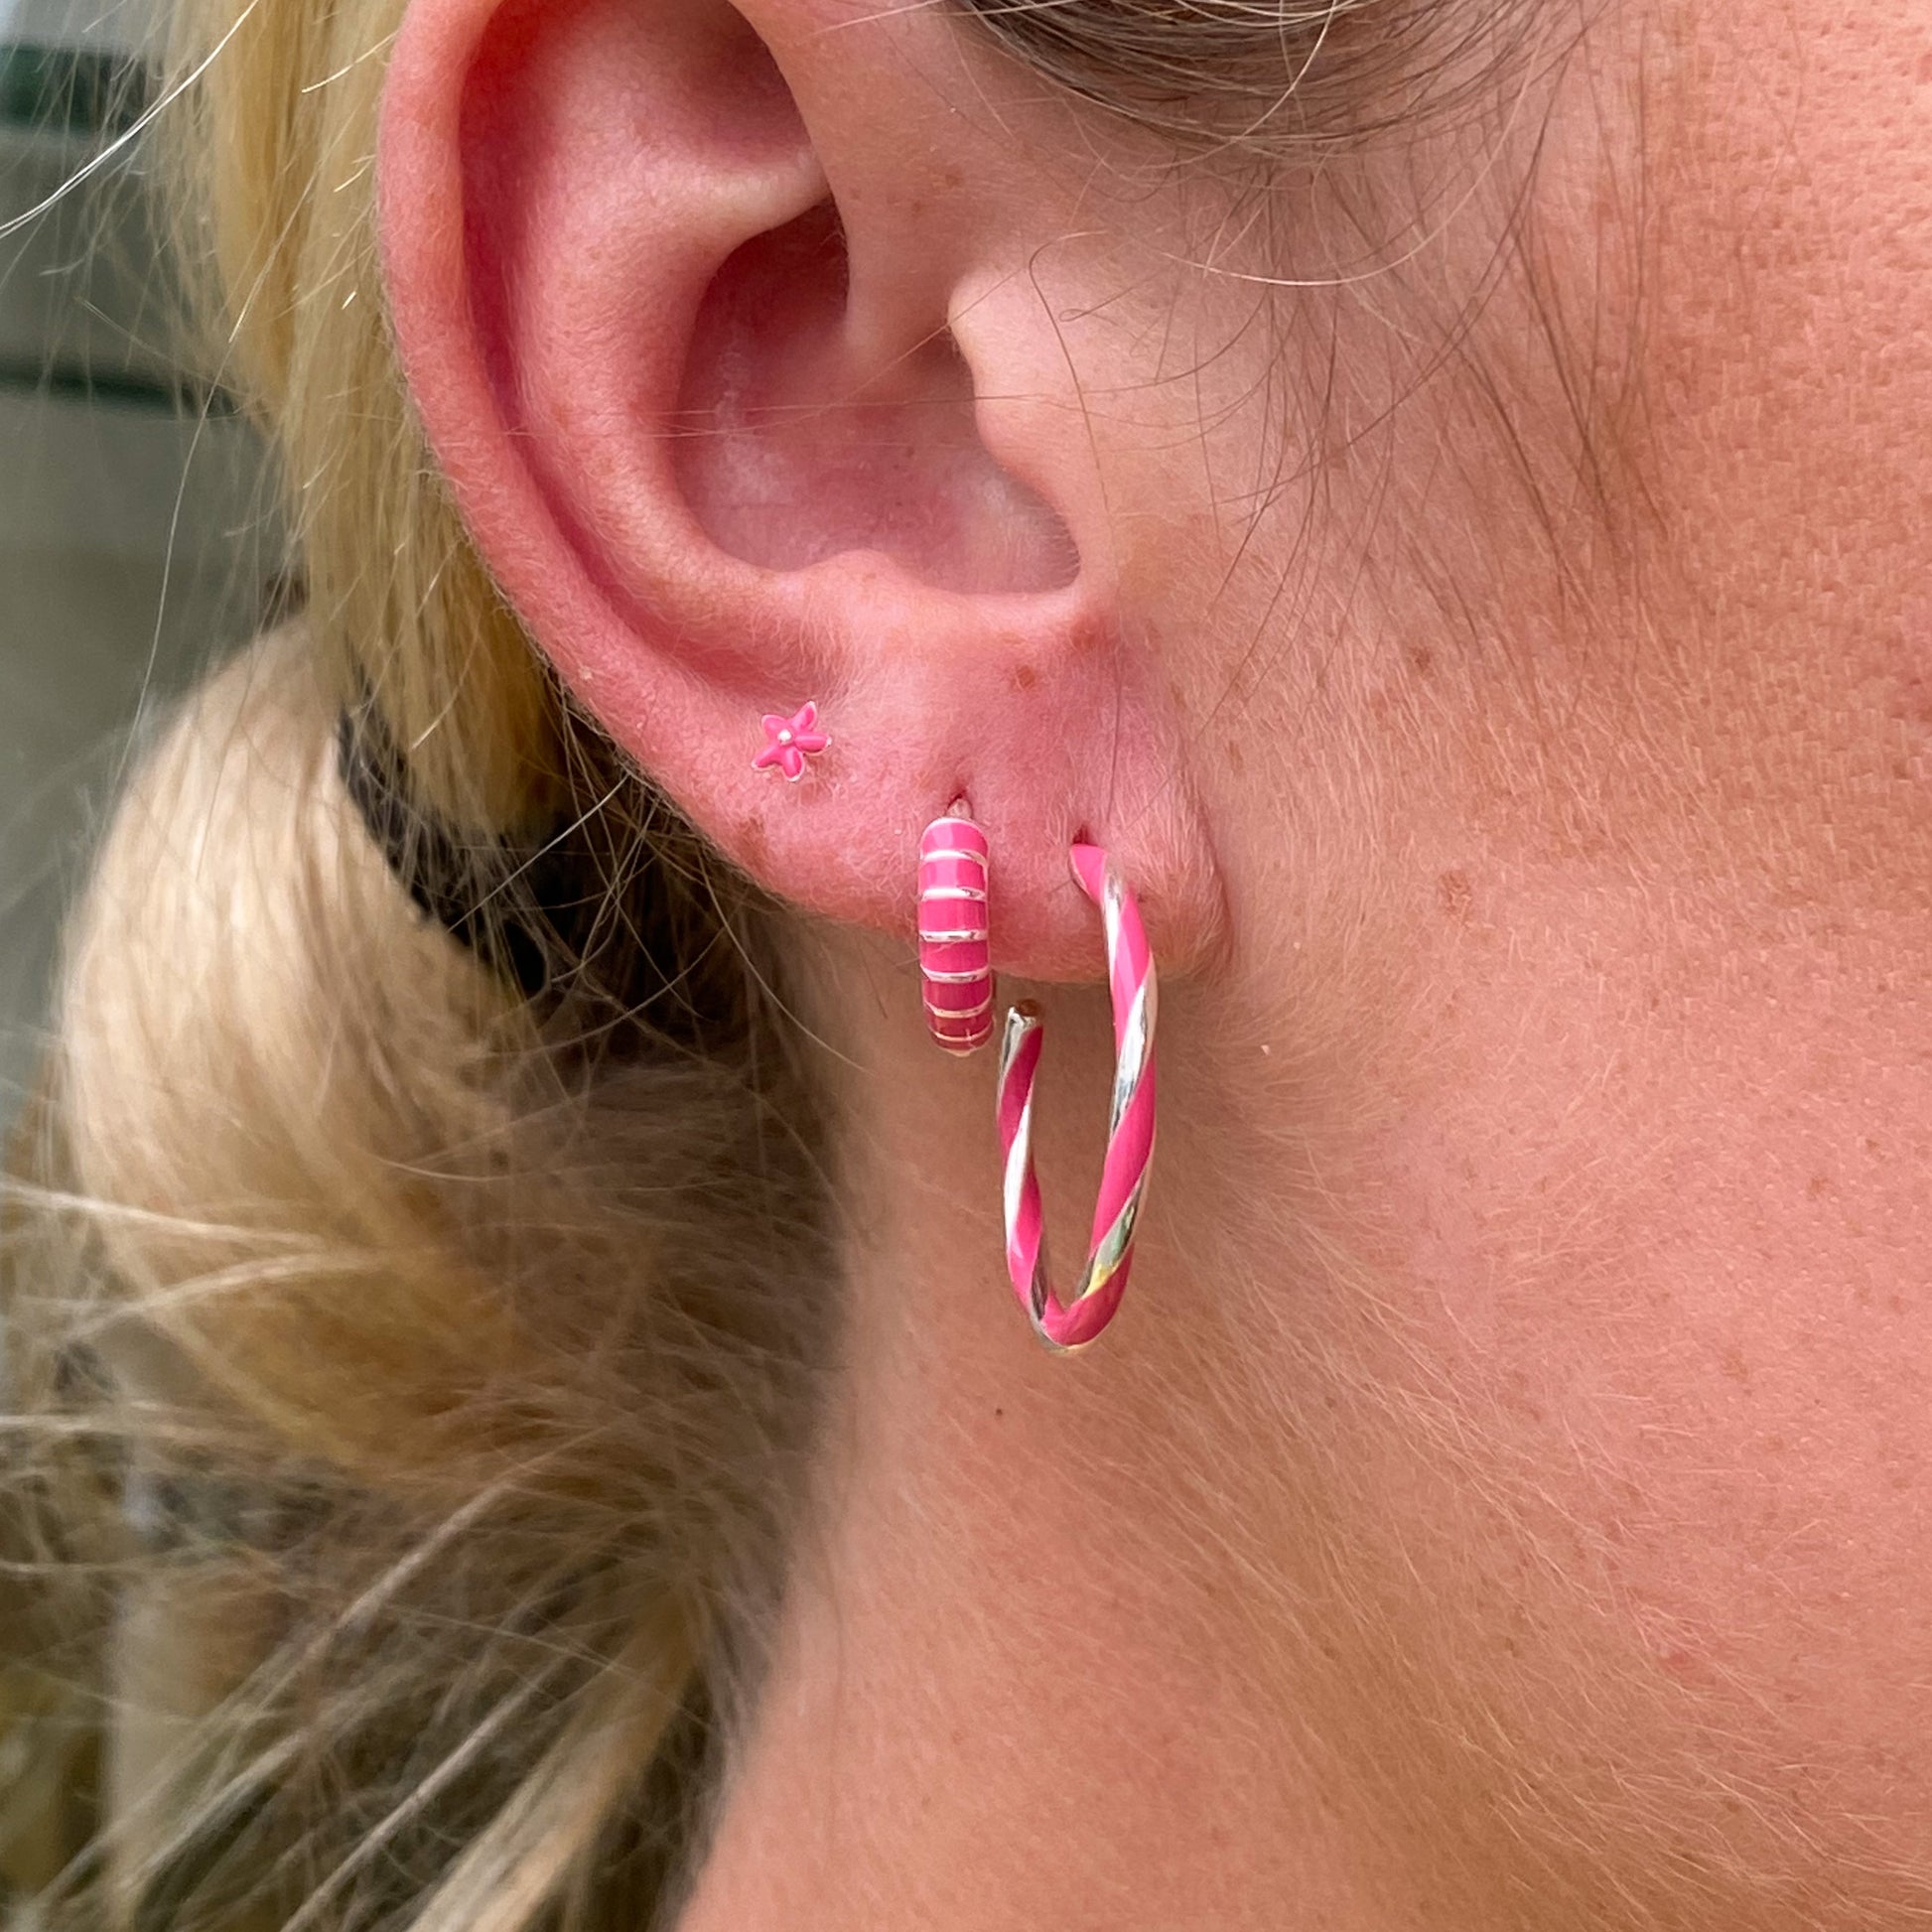 Silver Hot Pink Enamel Twist Hoop Earrings | 24mm - John Ross Jewellers